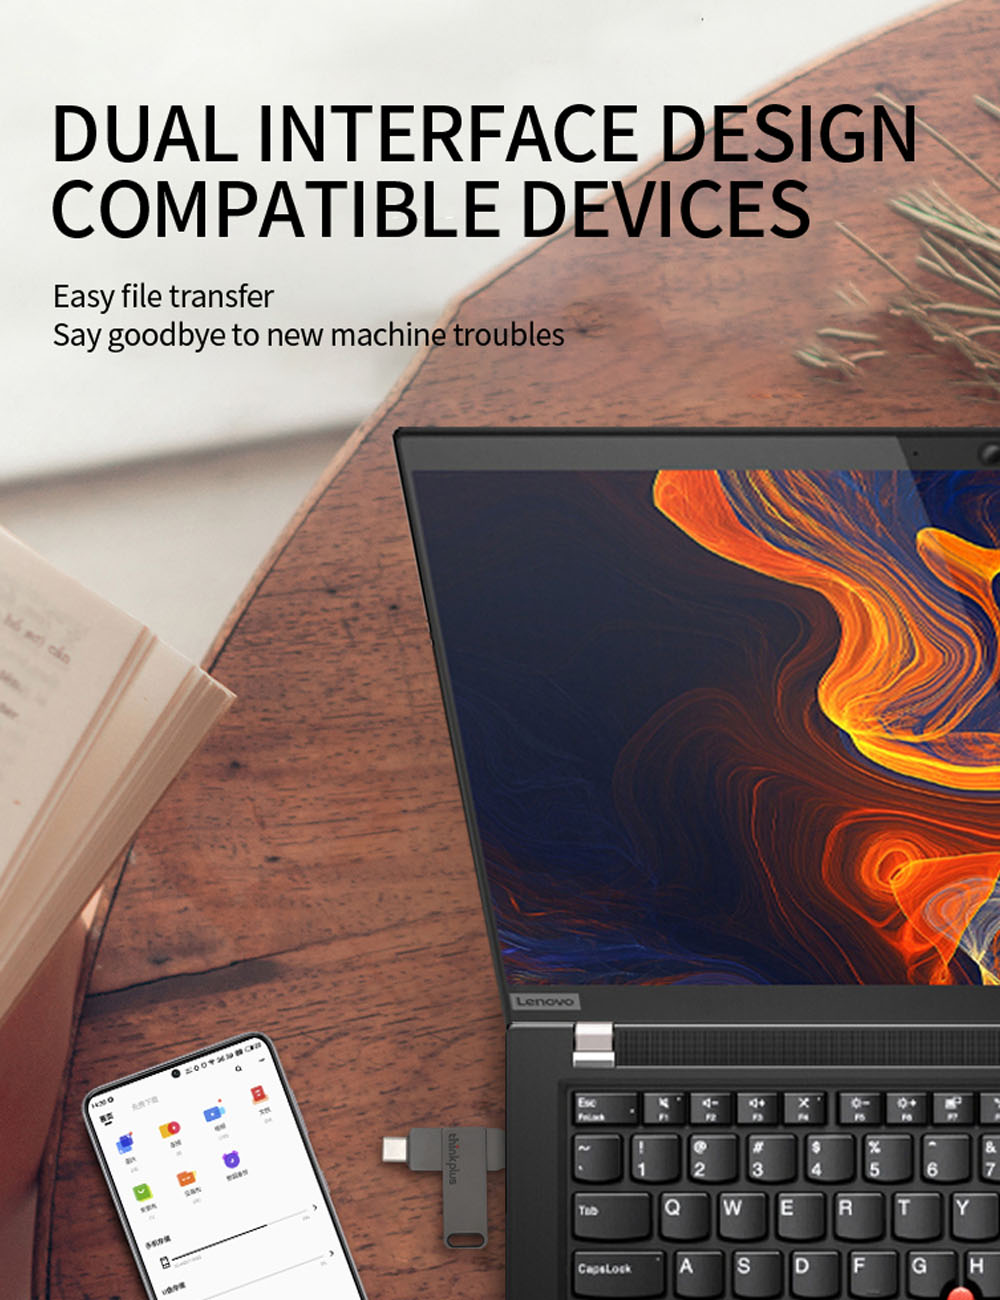 Lenovo-ThinkPlus-MU70-Type-C--USB32-Flash-Drive-Dual-Interface-OTG-3264128256G-Portable-Memory-U-Dis-1967304-3